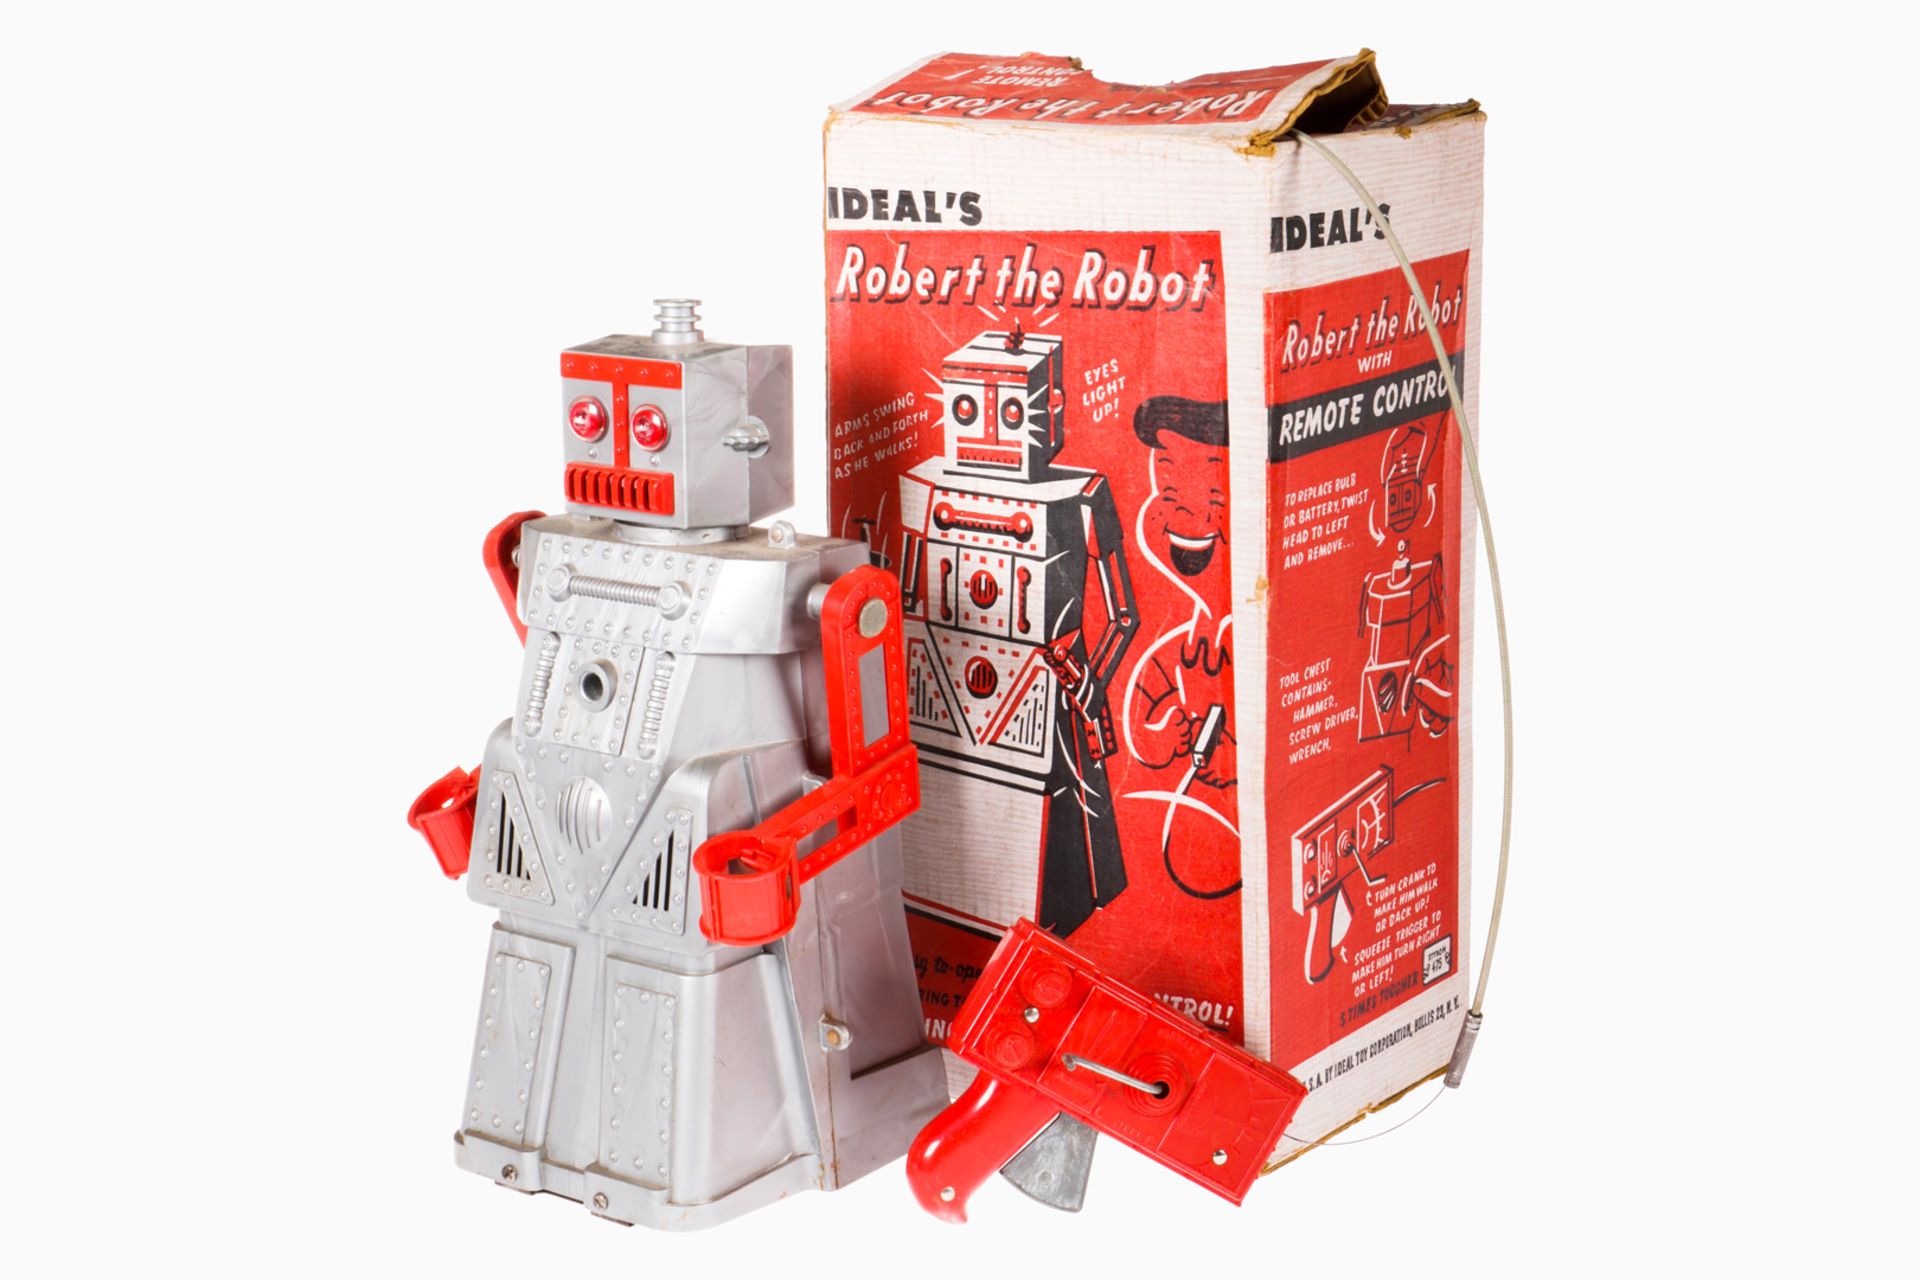 Ideal ”Robert the Robot” Nr. 4049, mit Fernbedienung, spricht, läuft und bewegt die Arme, Alterungs-